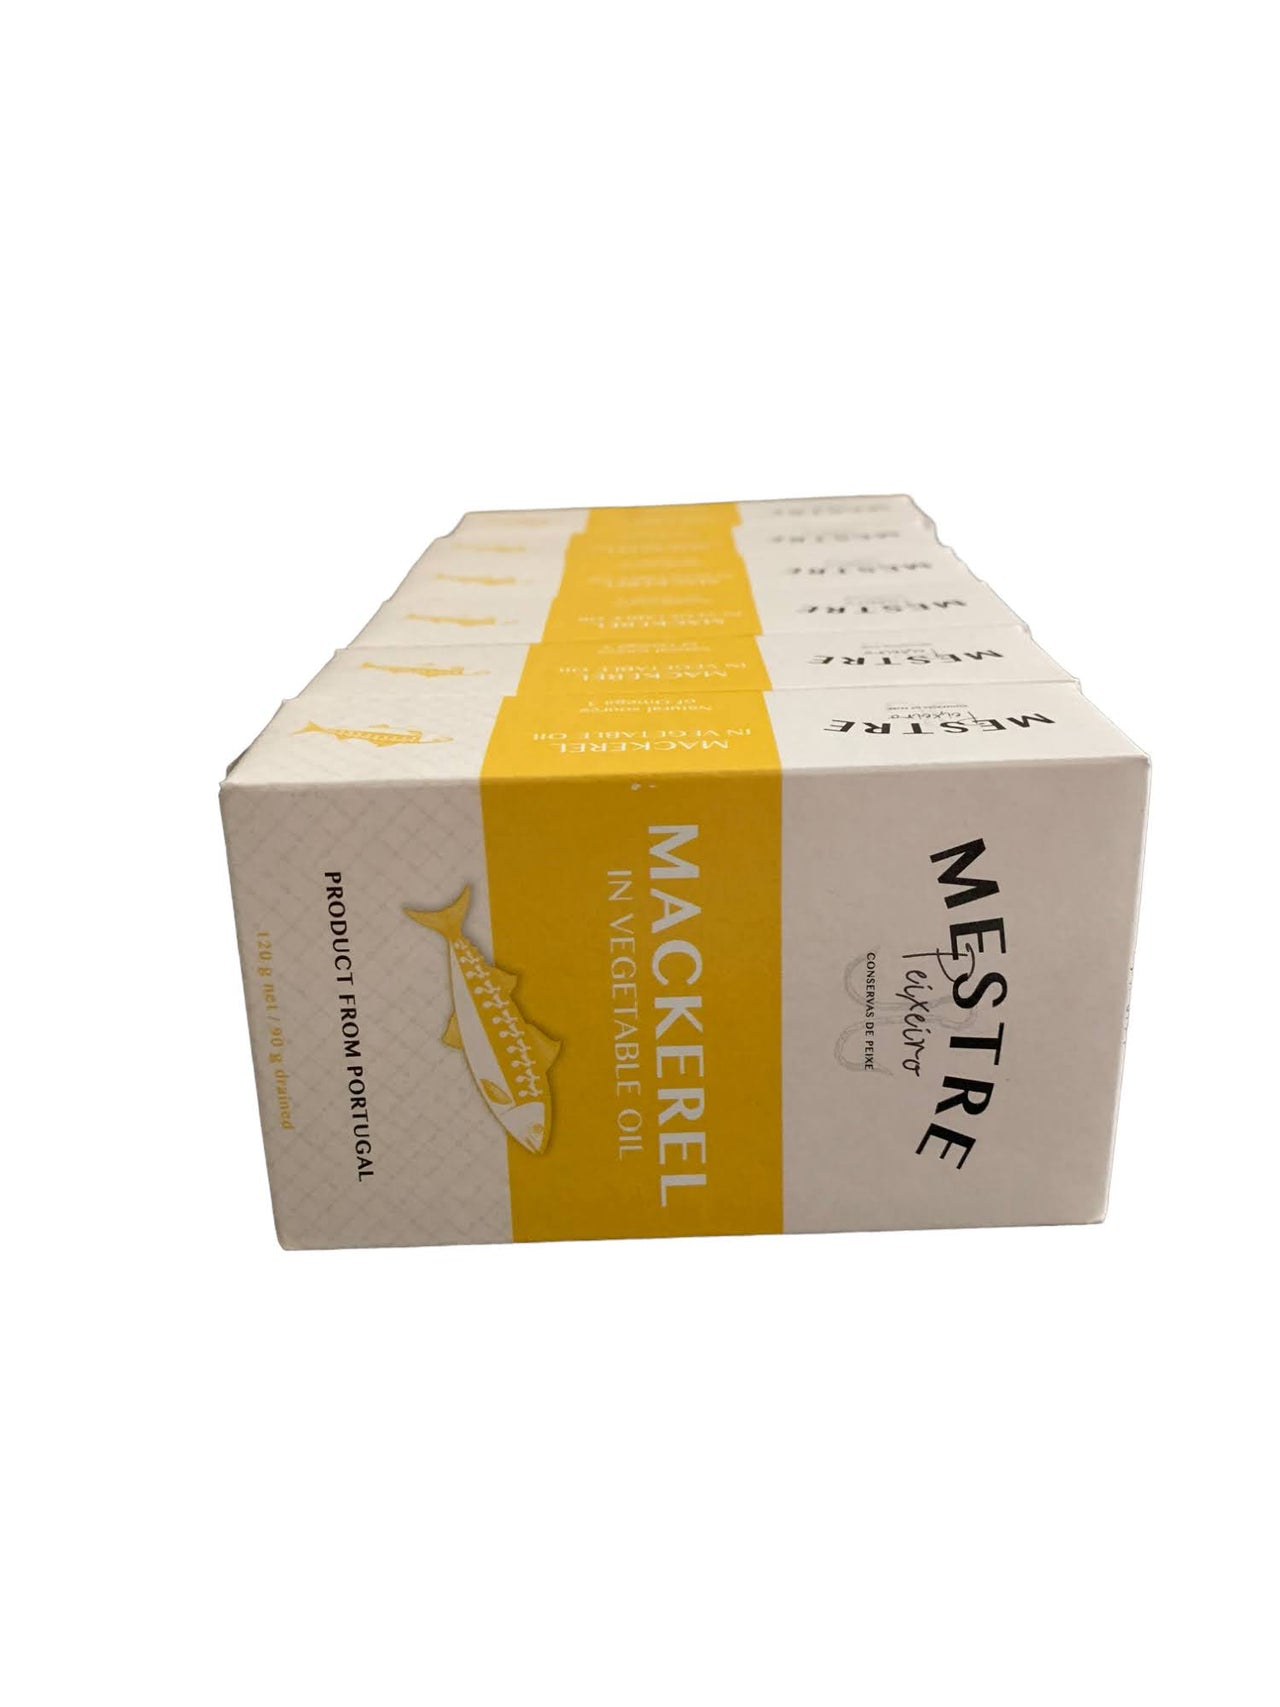 Mestre Mackerel in Vegetable Oil - 6 Pack